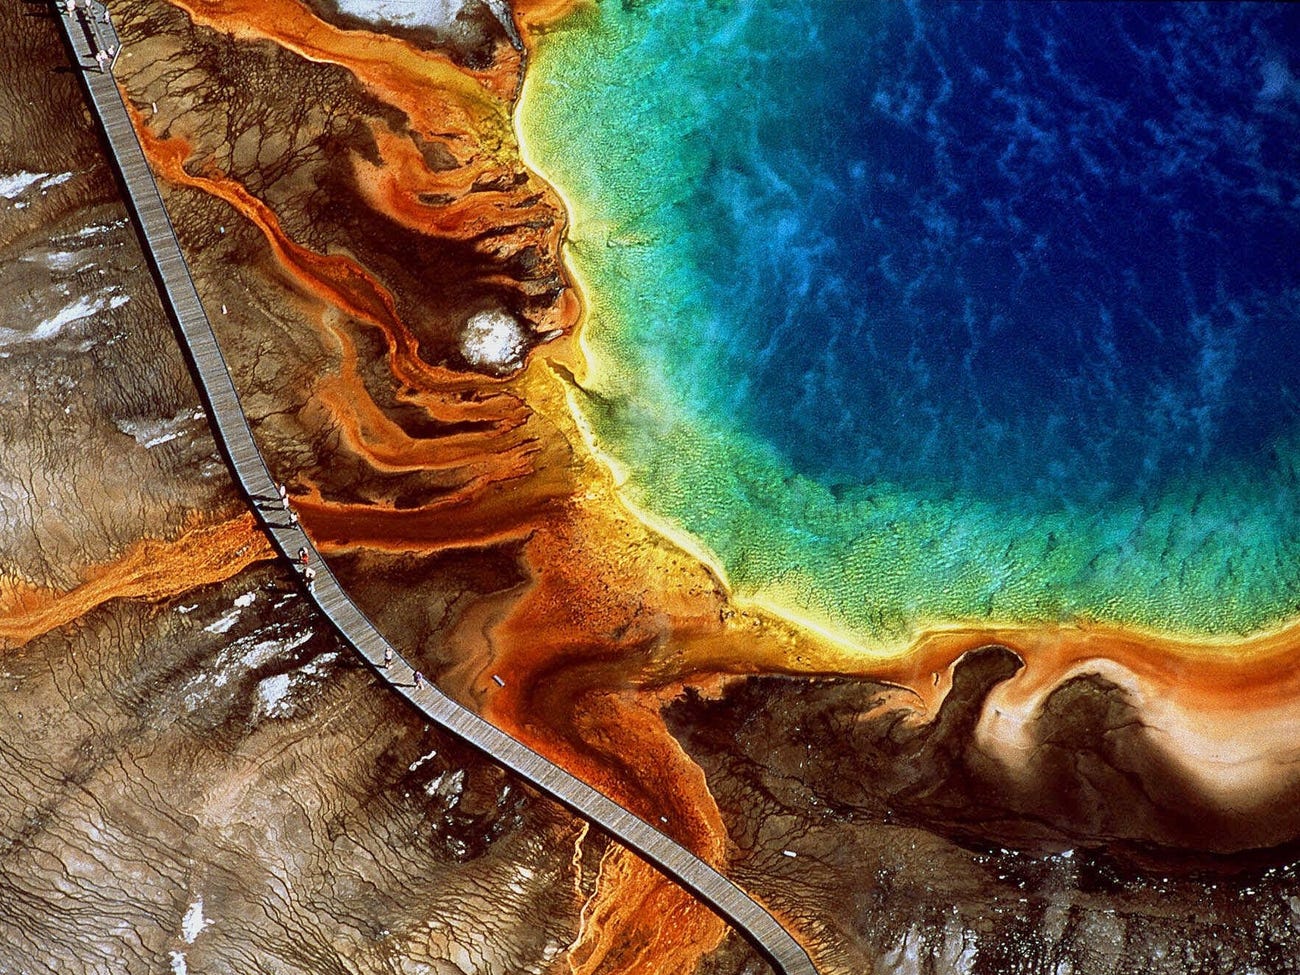 Grand Prismatic Spring ở Yellowstone là suối nước nóng lớn nhất ở Mỹ. Atlas Obscura đưa tin, vi khuẩn đầy màu sắc phát triển mạnh bên trong hồ, tạo nên những vòng cầu vồng tuyệt đẹp